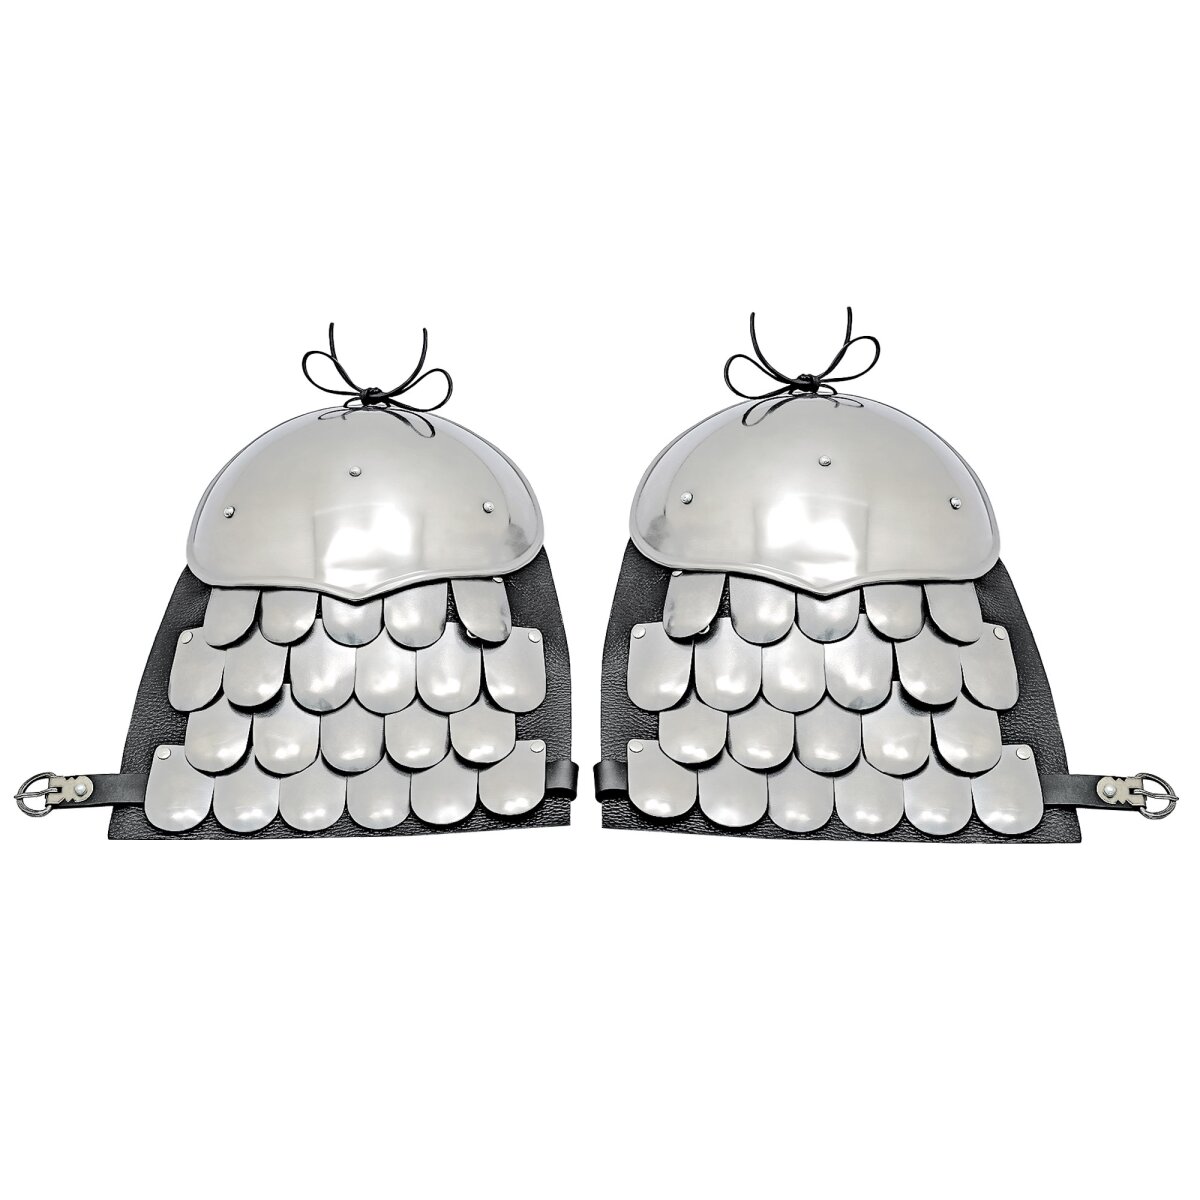 Medieval Spaulders with Scale Armor for Upper Shoulder...